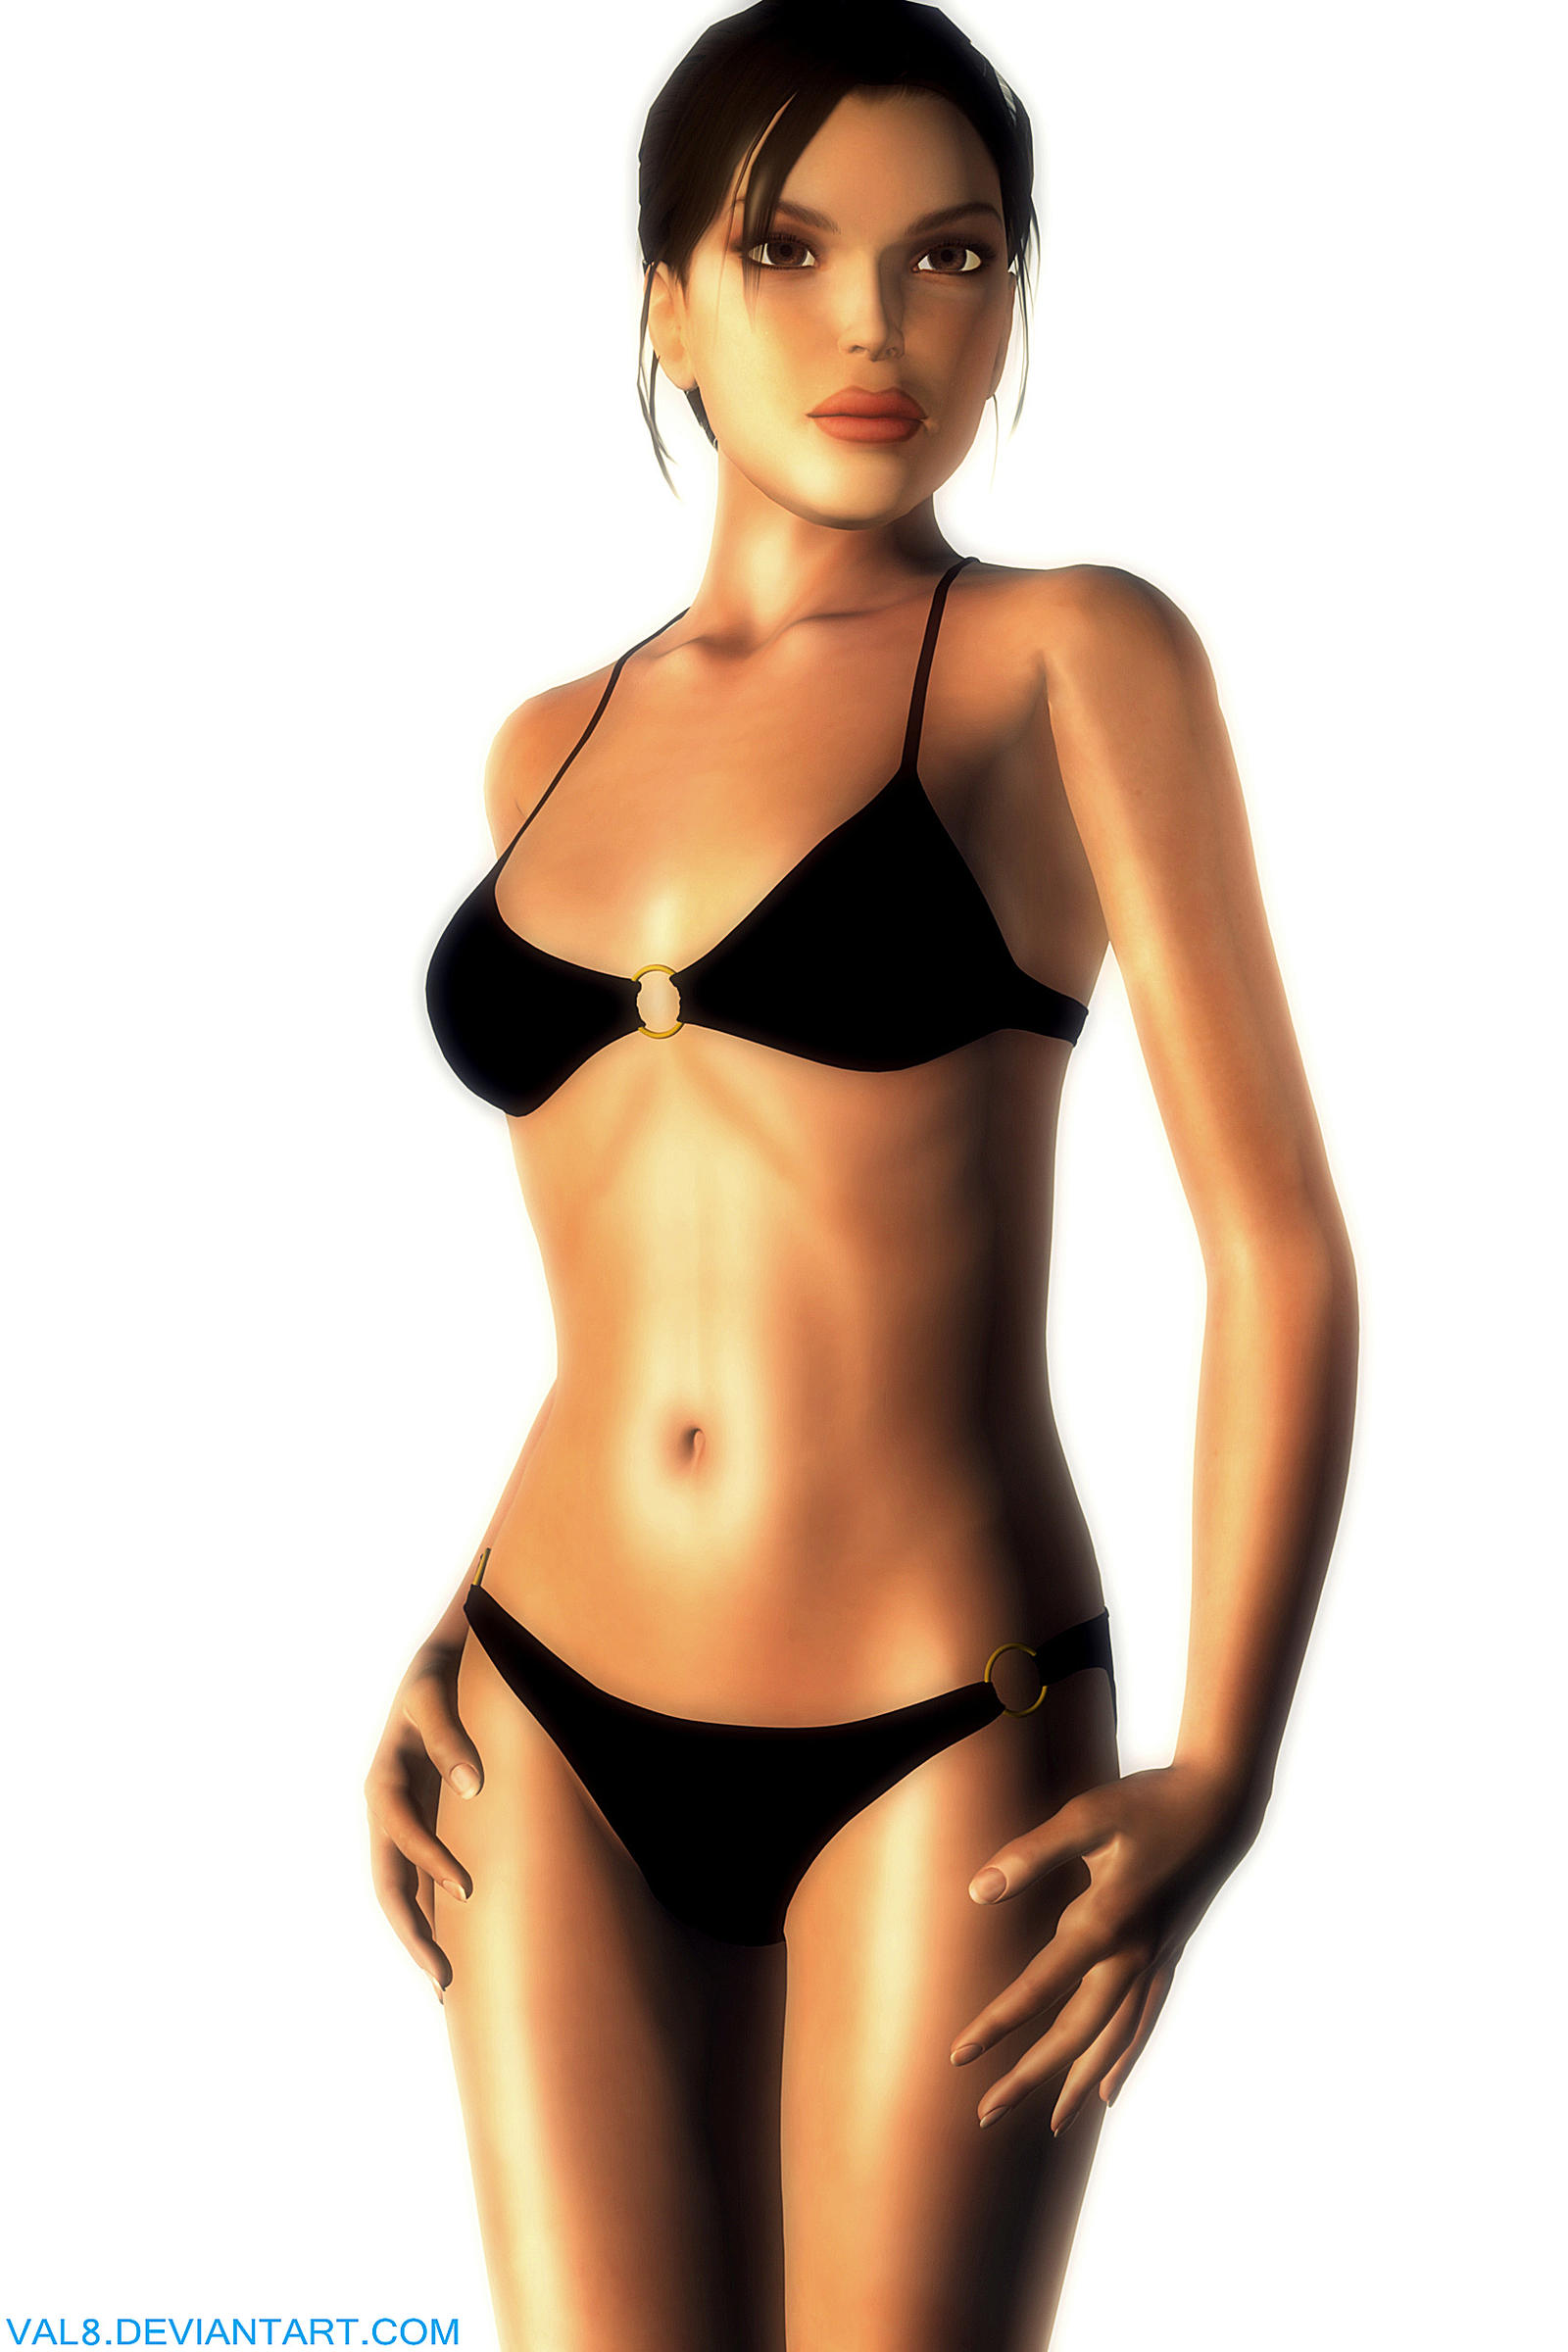 Lara croft bikini porn picture